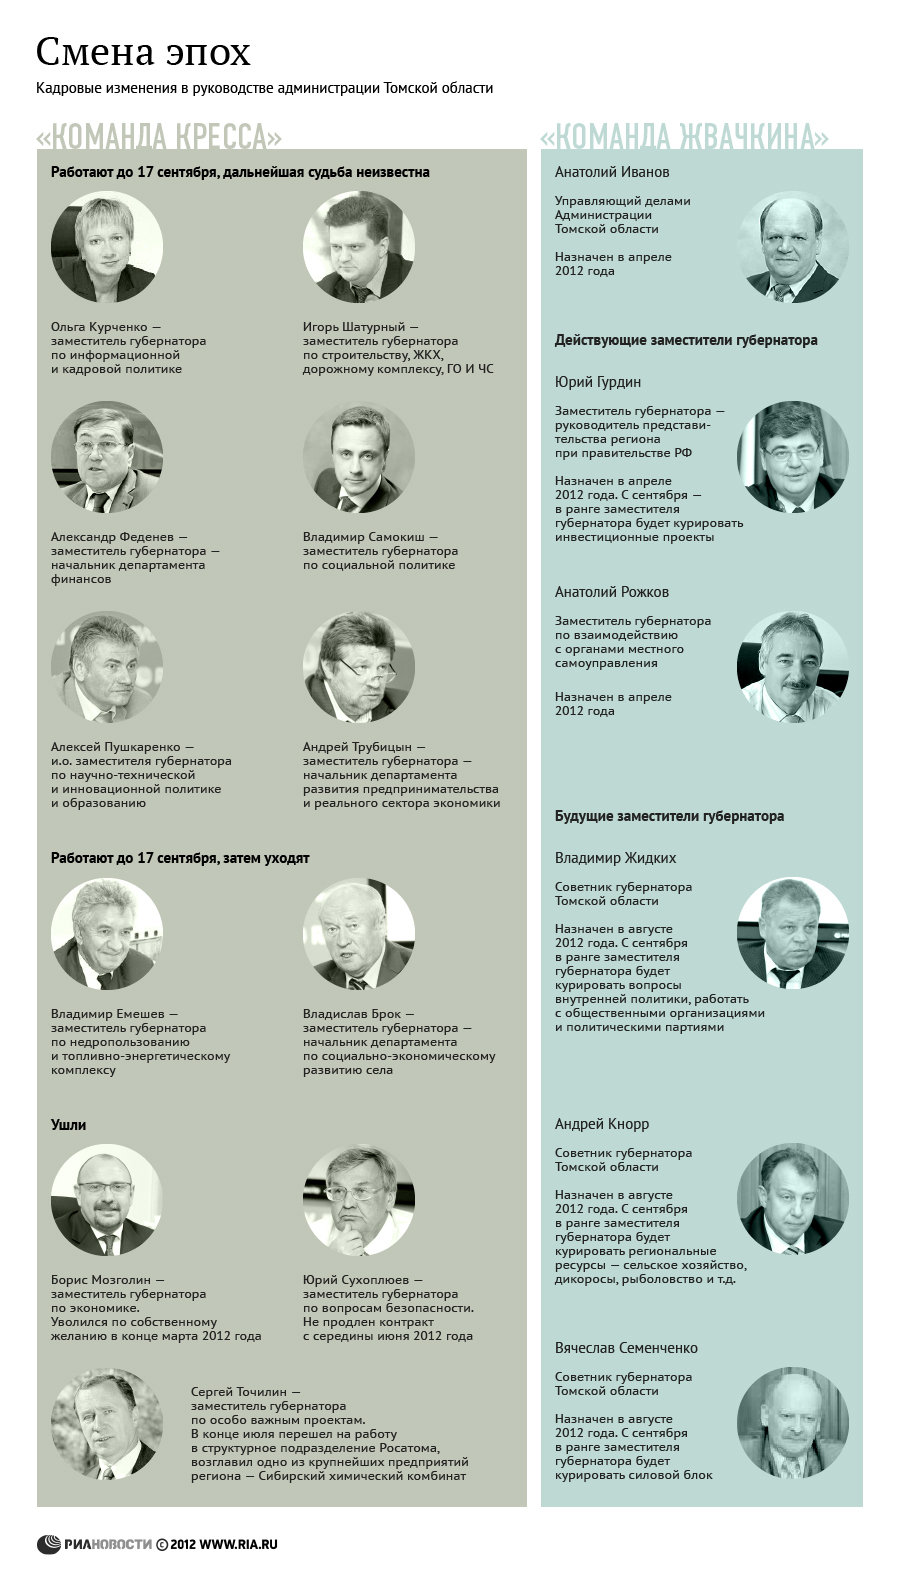 Кадровые изменения в руководстве администрации Томской области